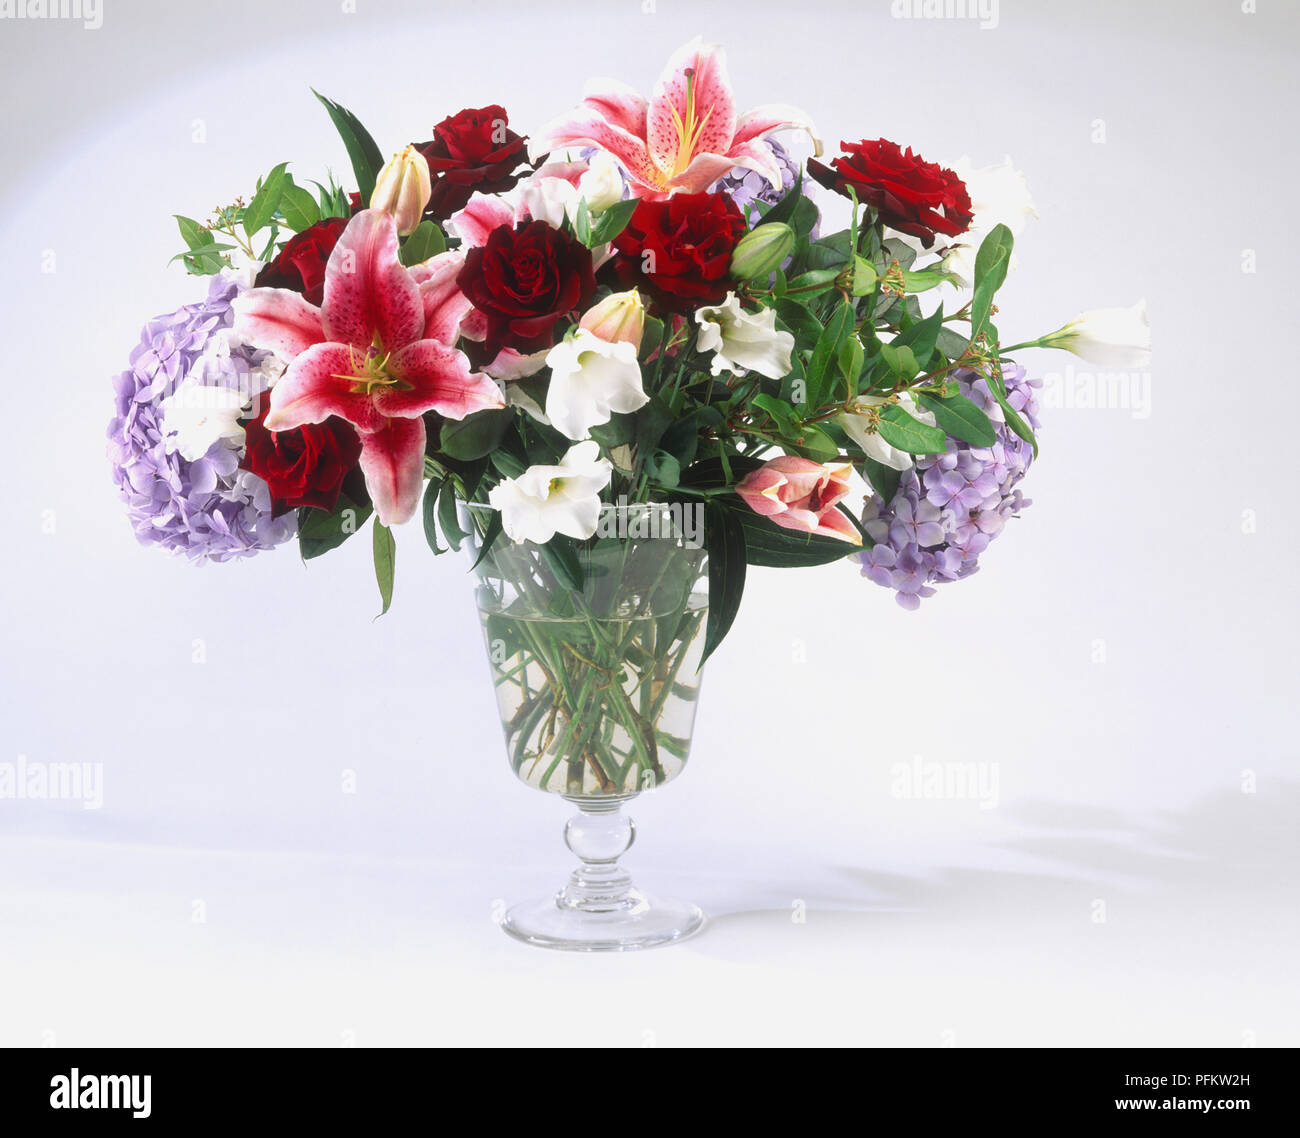 Un vase en verre contenant un gros bouquet de fleurs, notamment des roses, hortensias et nénuphars Banque D'Images